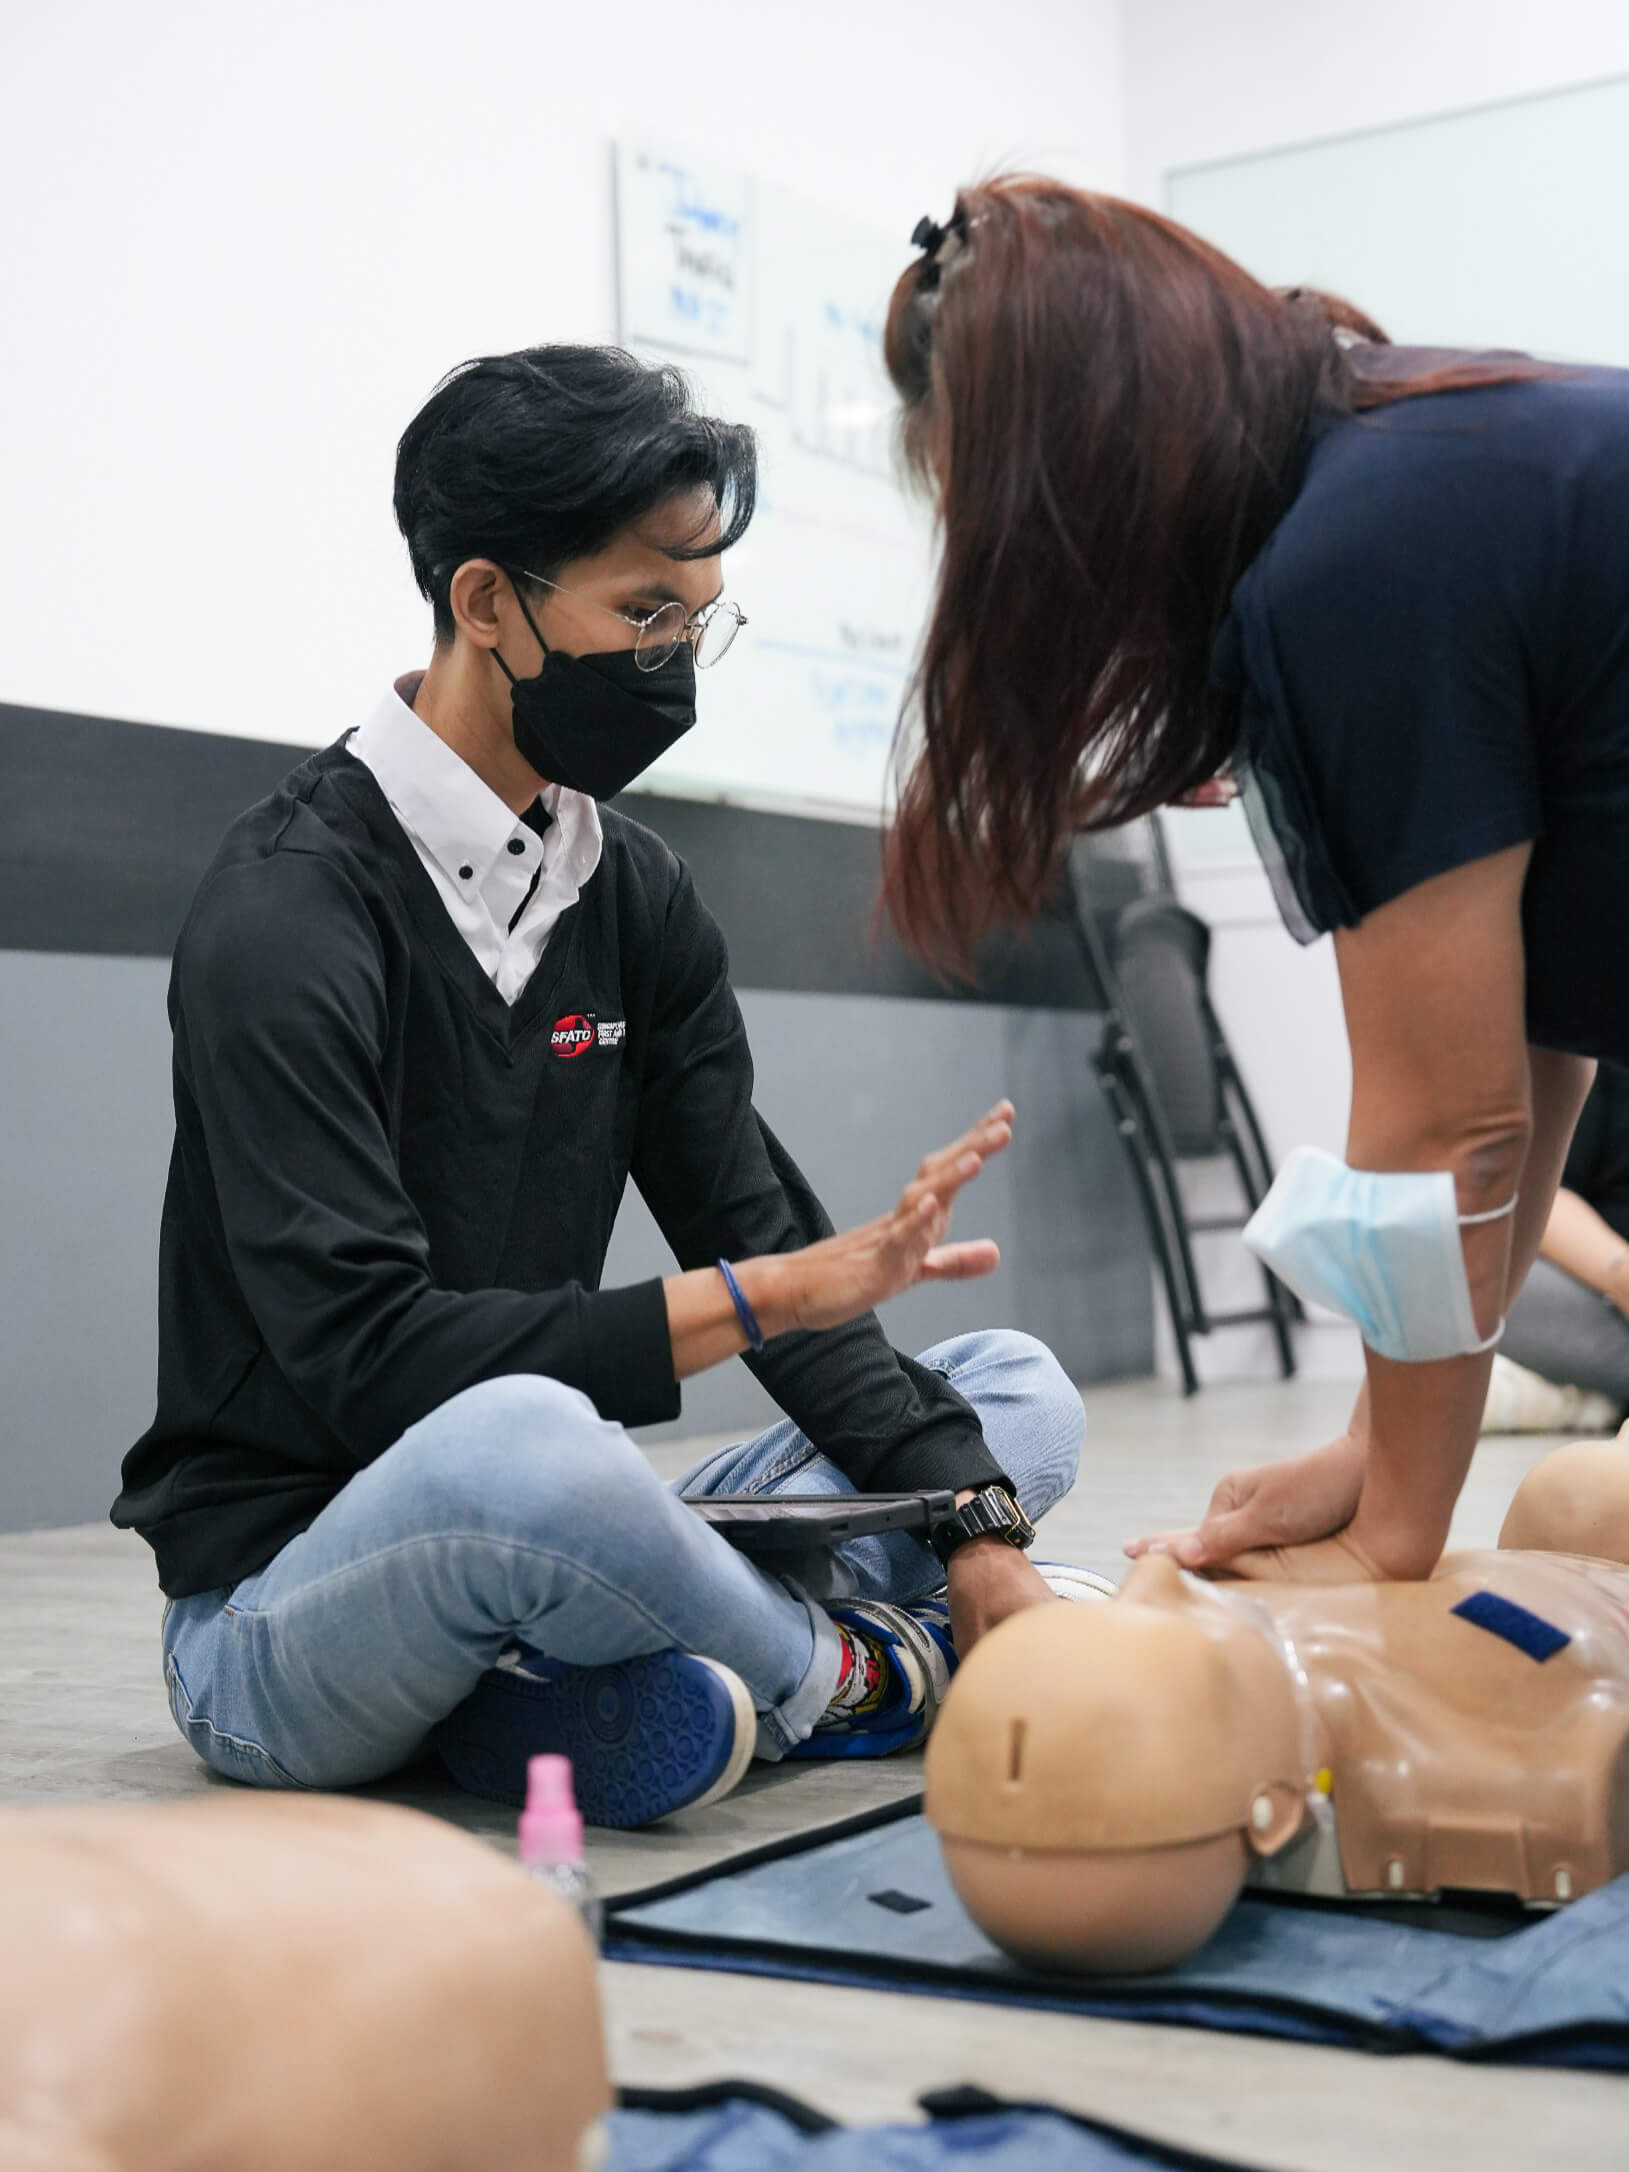 Occupational First Aid Trainer Mr Muhammad Nazrul 'Ifruz Bin Abdol Rahman